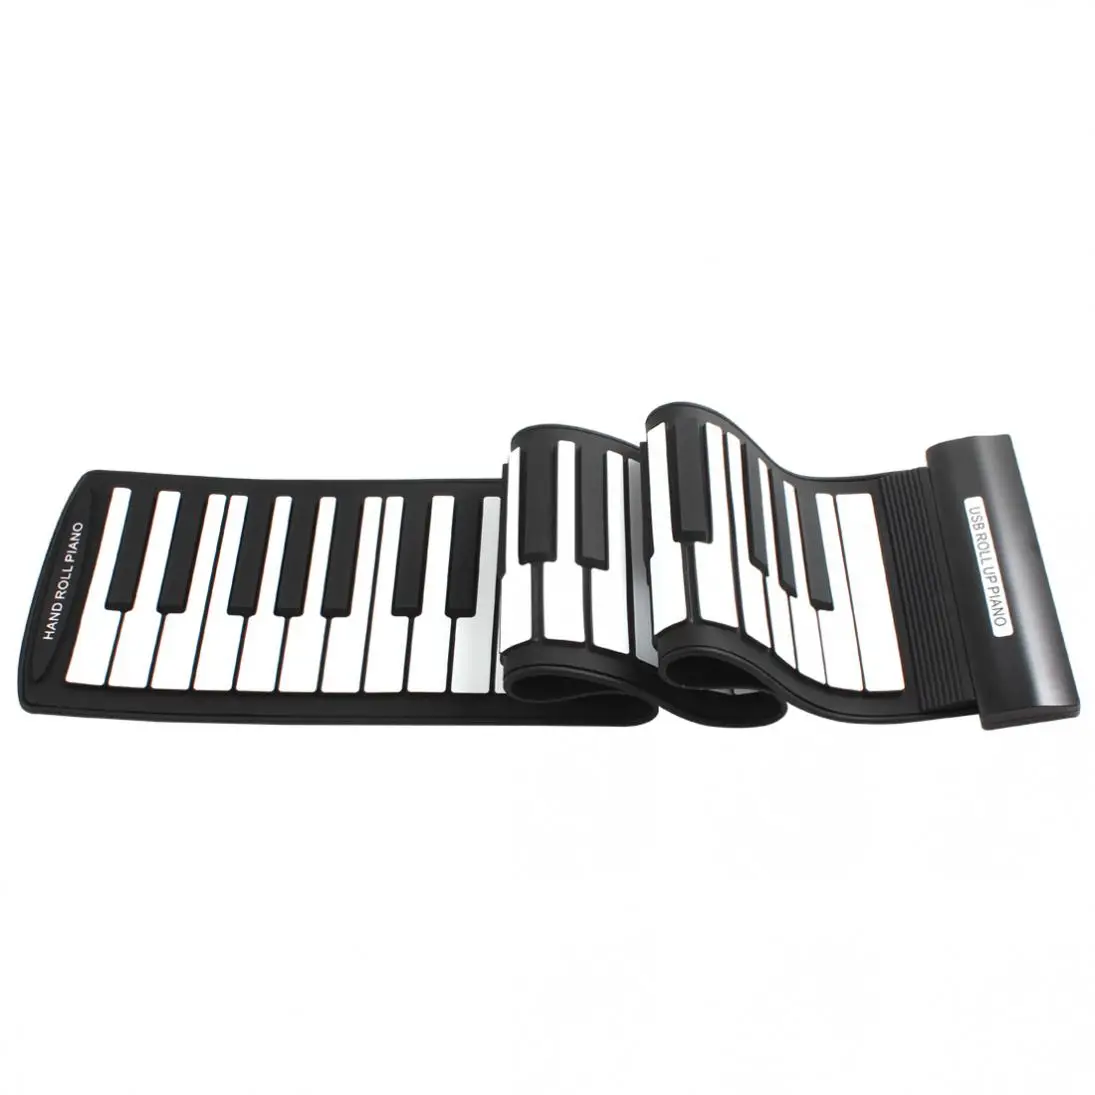 KONIX MD61 гибкие 61 клавиши Профессиональный миди клавиатуры электронные складной Roll Up пианино для детей